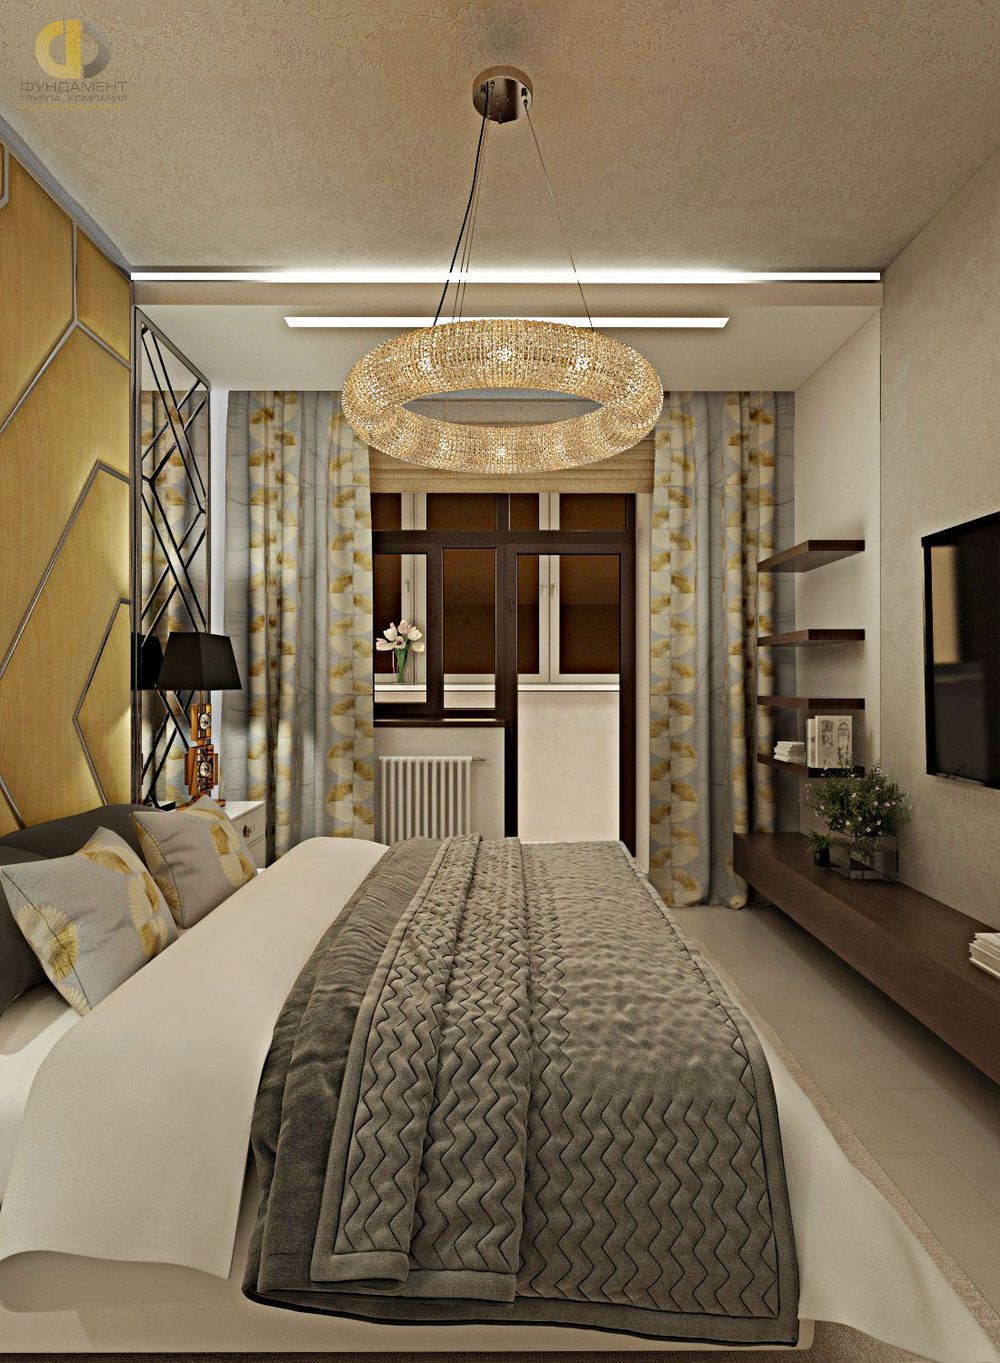 Спальня в стиле дизайна арт-деко (ар-деко) по адресу г. Москва, ул. Серпуховской Вал, д. 19/21, 2019 года